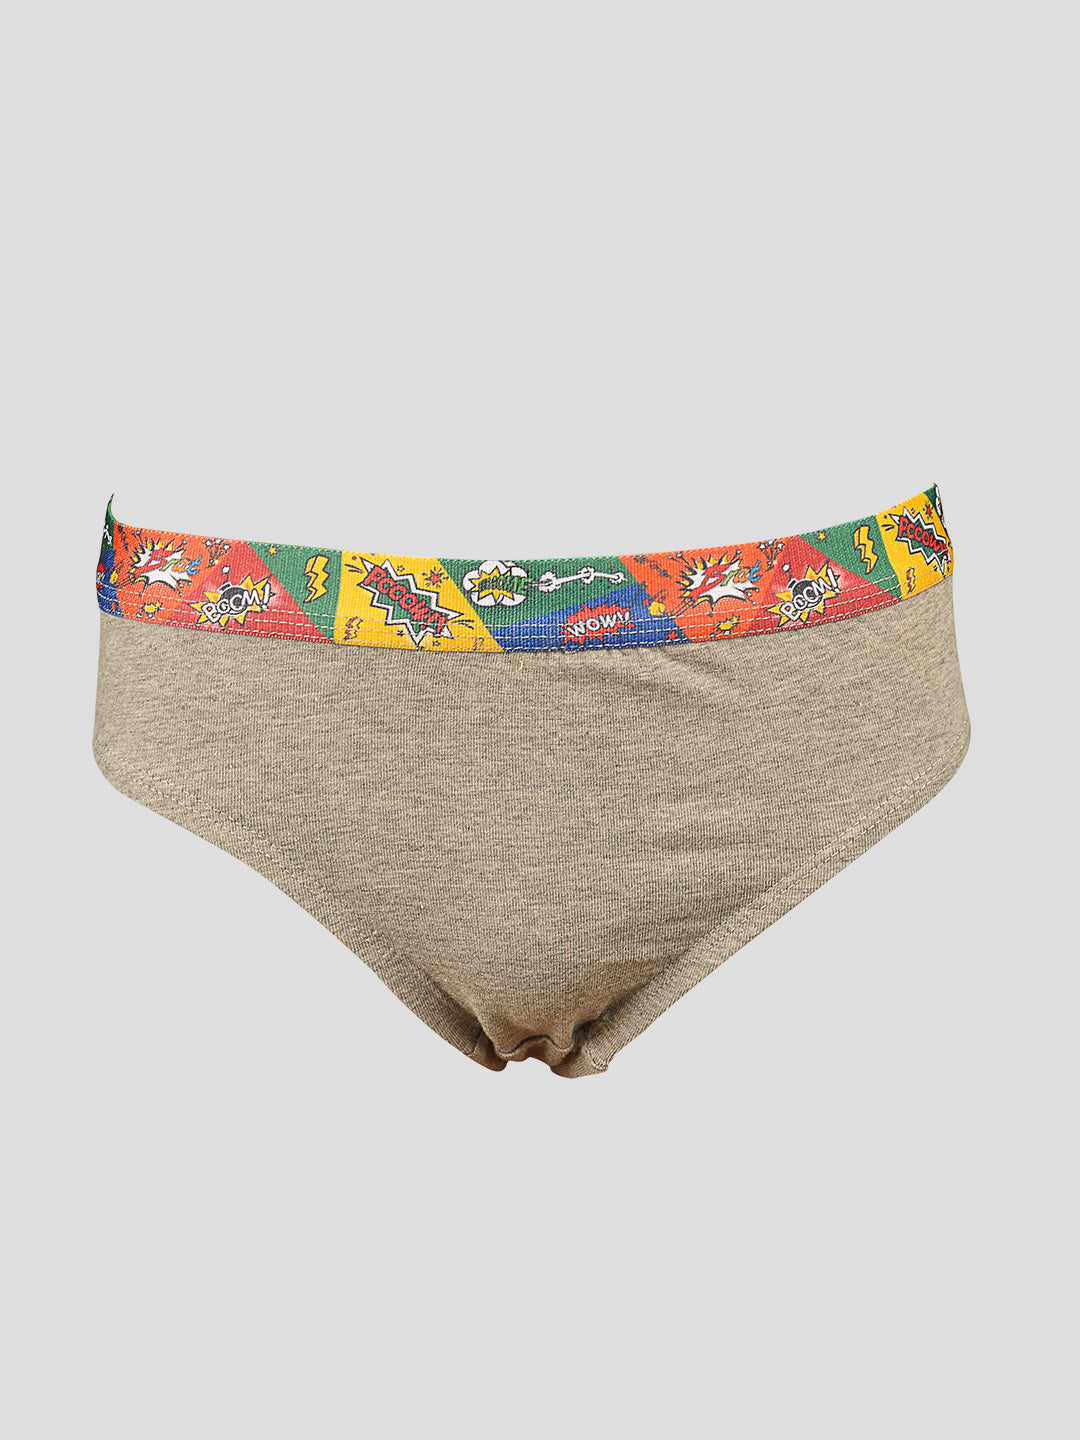 Male Brief K.T. Printed Cotton Kids Underwear, Size: 75cm at Rs 185/piece  in Varanasi